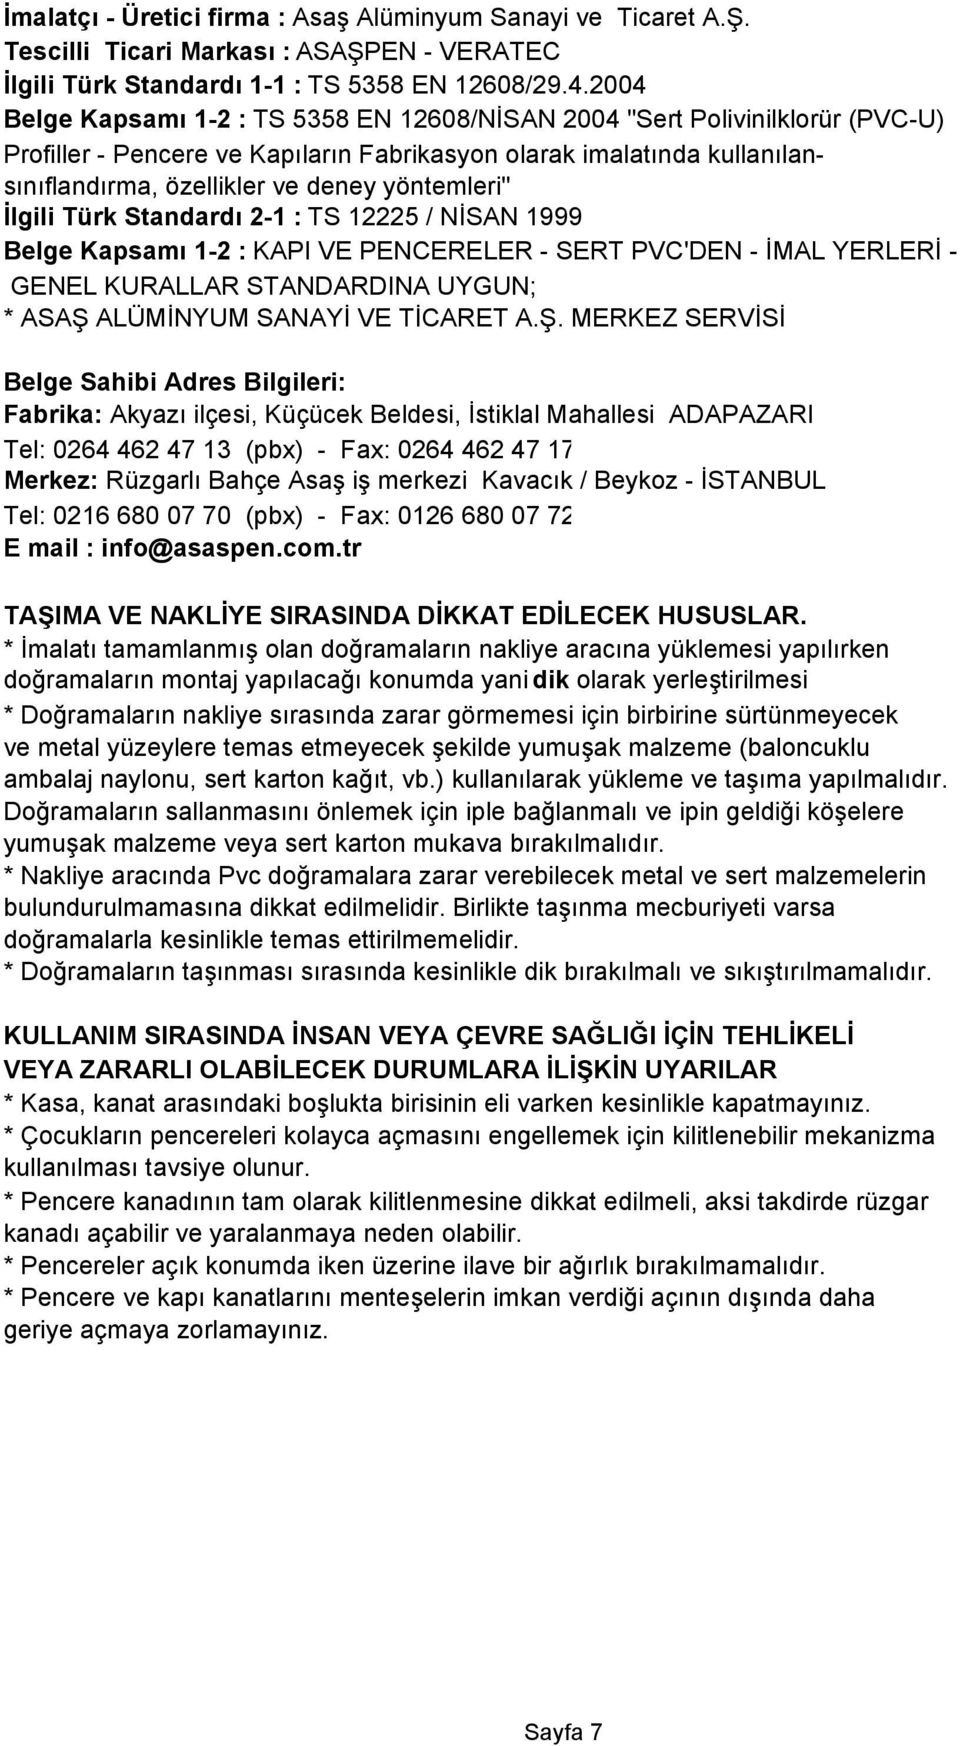 yöntemleri" İlgili Türk Standardı 2-1 : TS 12225 / NİSAN 1999 Belge Kapsamı 1-2 : KAPI VE PENCERELER - SERT PVC'DEN - İMAL YERLERİ - GENEL KURALLAR STANDARDINA UYGUN; * ASAŞ ALÜMİNYUM SANAYİ VE